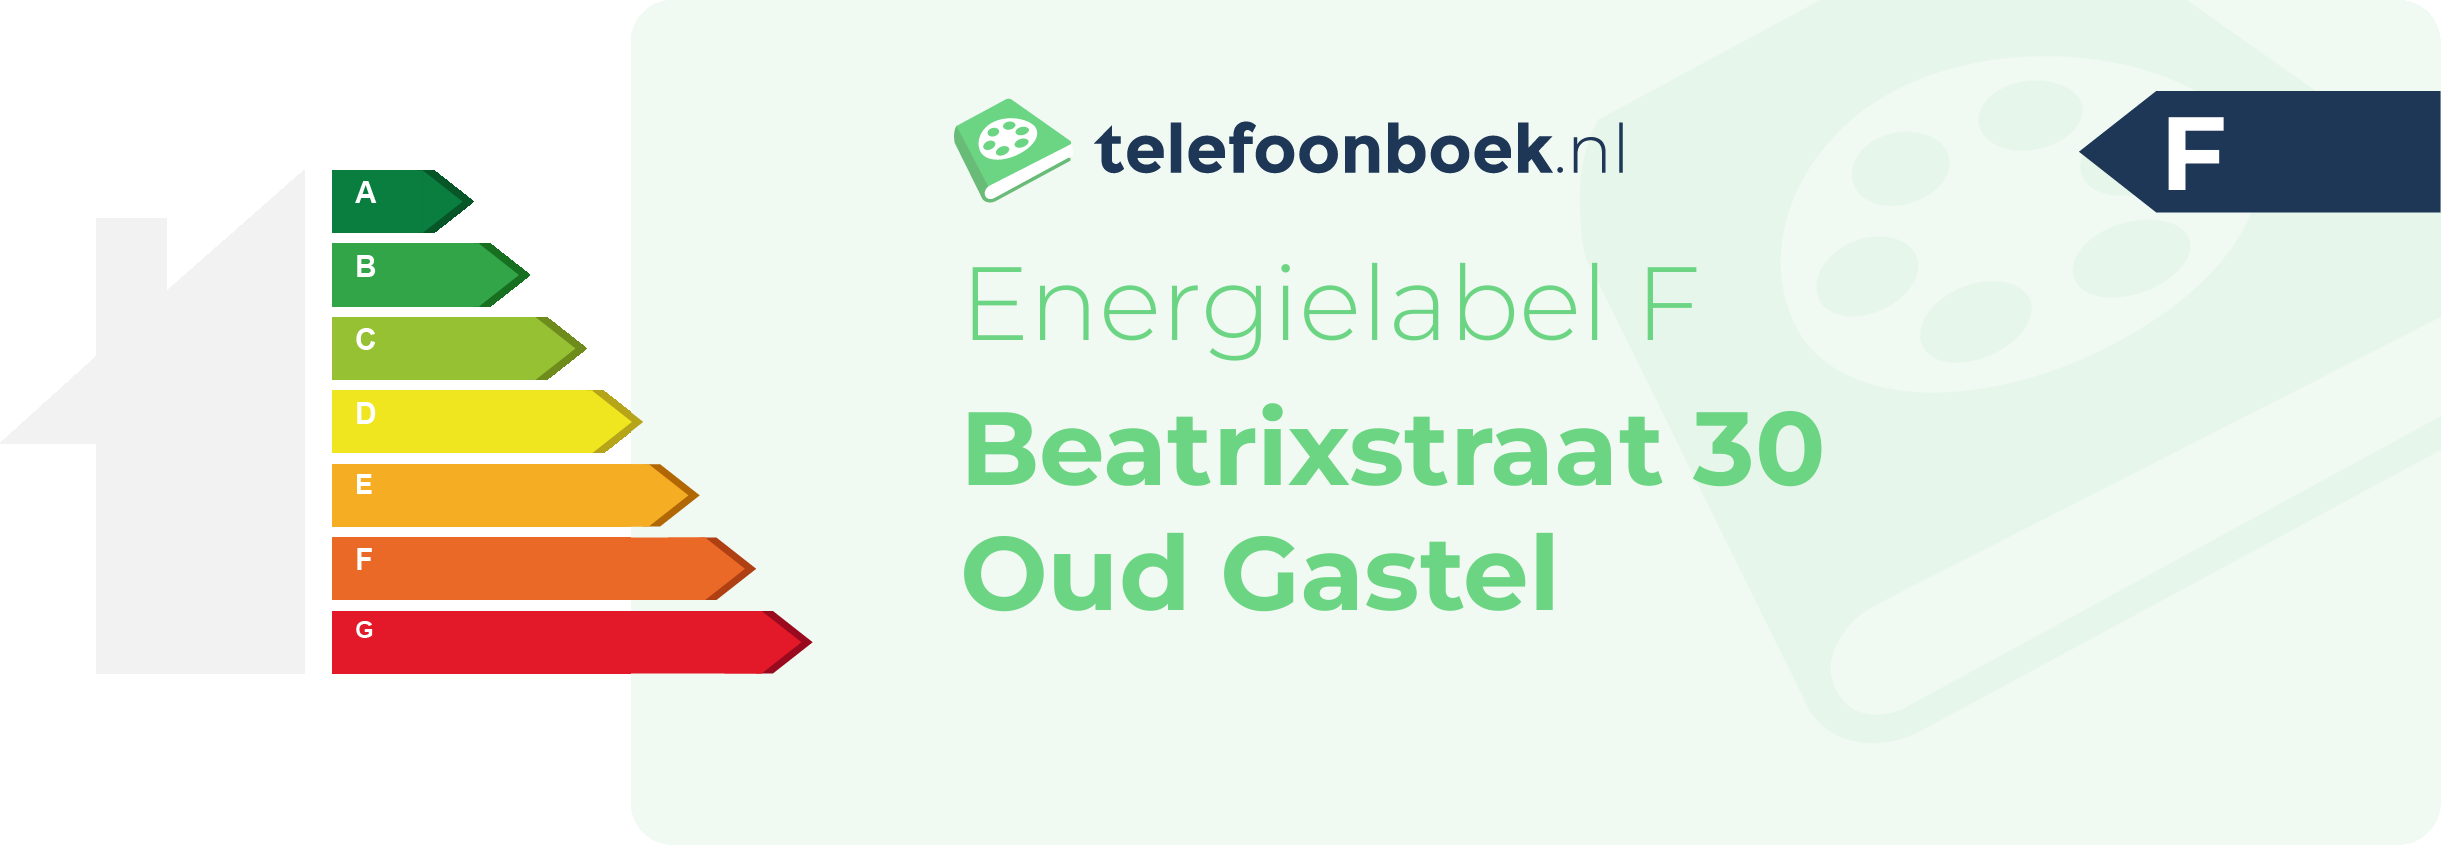 Energielabel Beatrixstraat 30 Oud Gastel